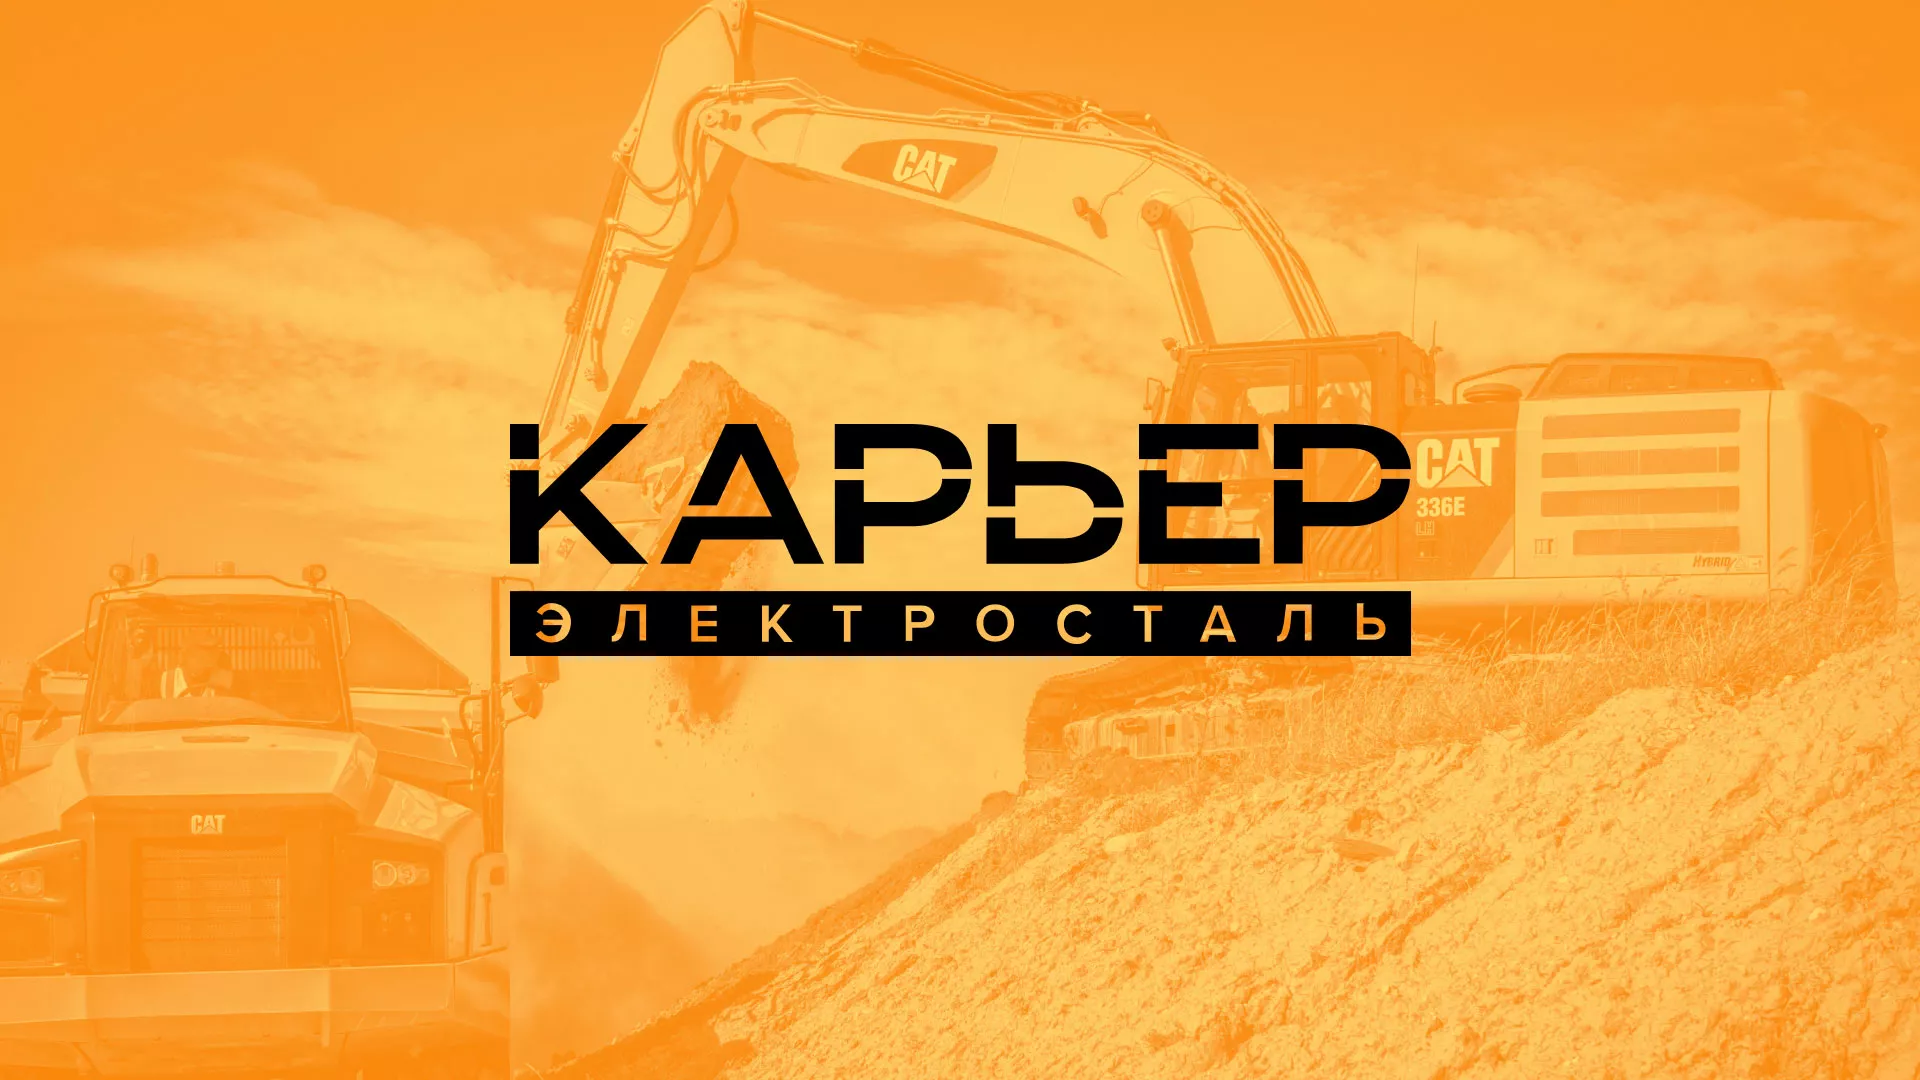 Разработка сайта по продаже нерудных материалов «Карьер» в Каменске-Уральском